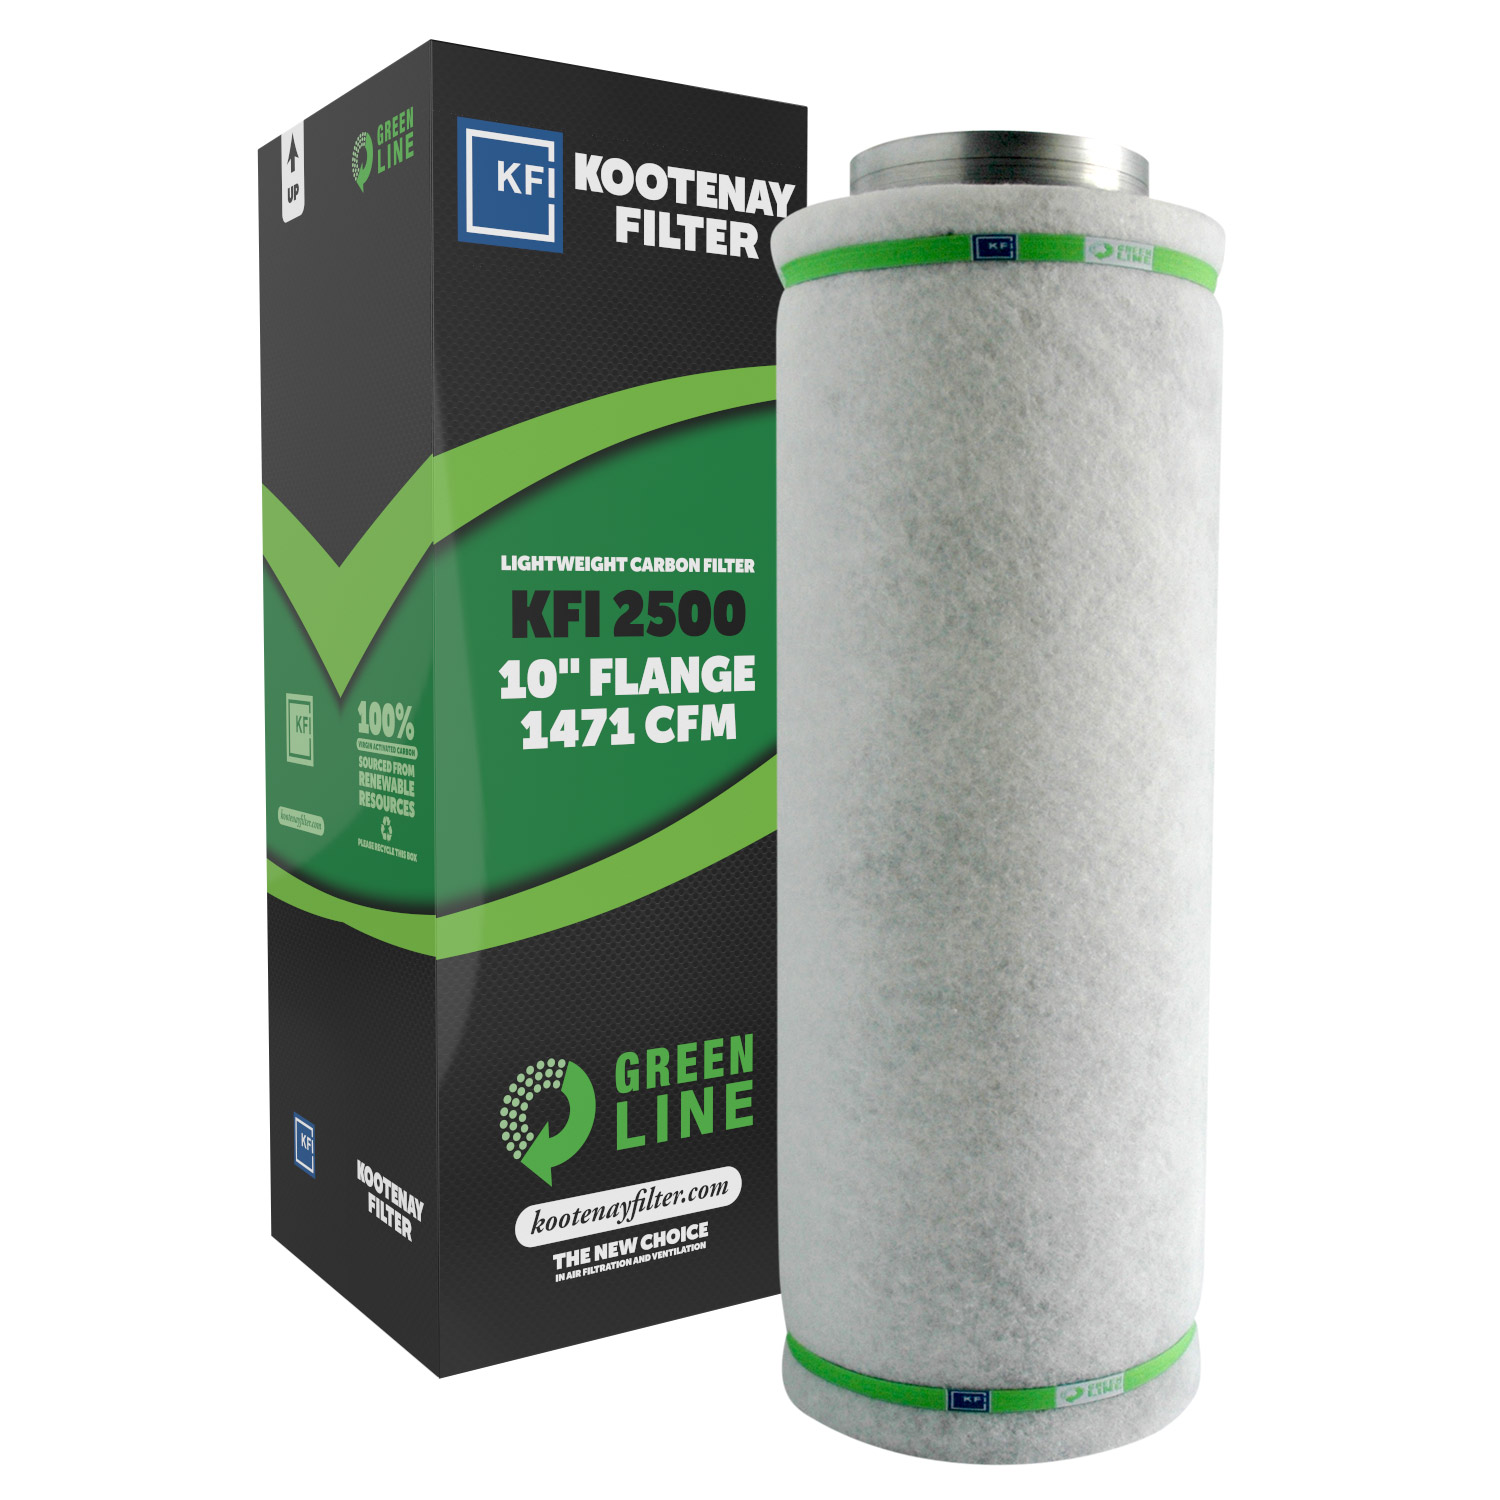 KFI GL2500 Greenline Filter